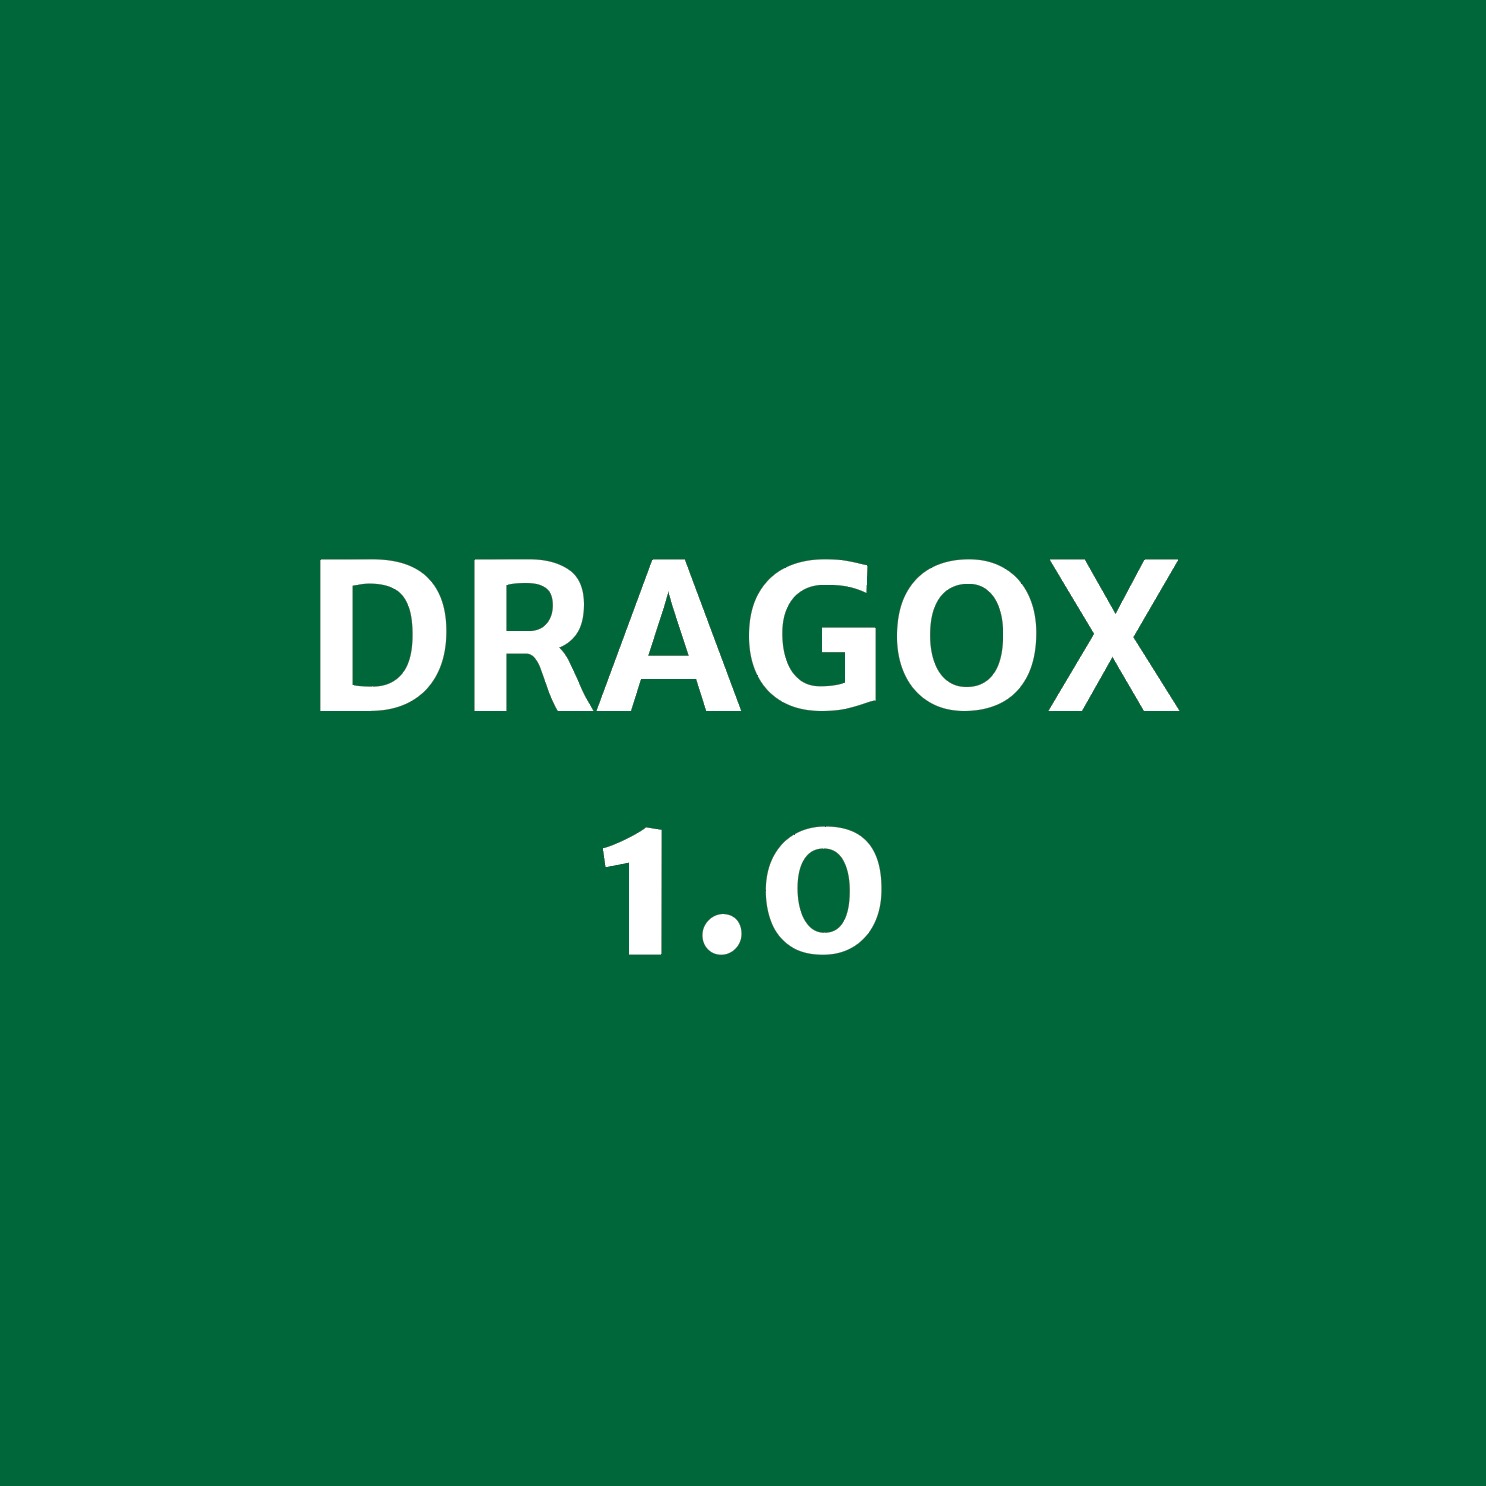 DRAGOX 1.0